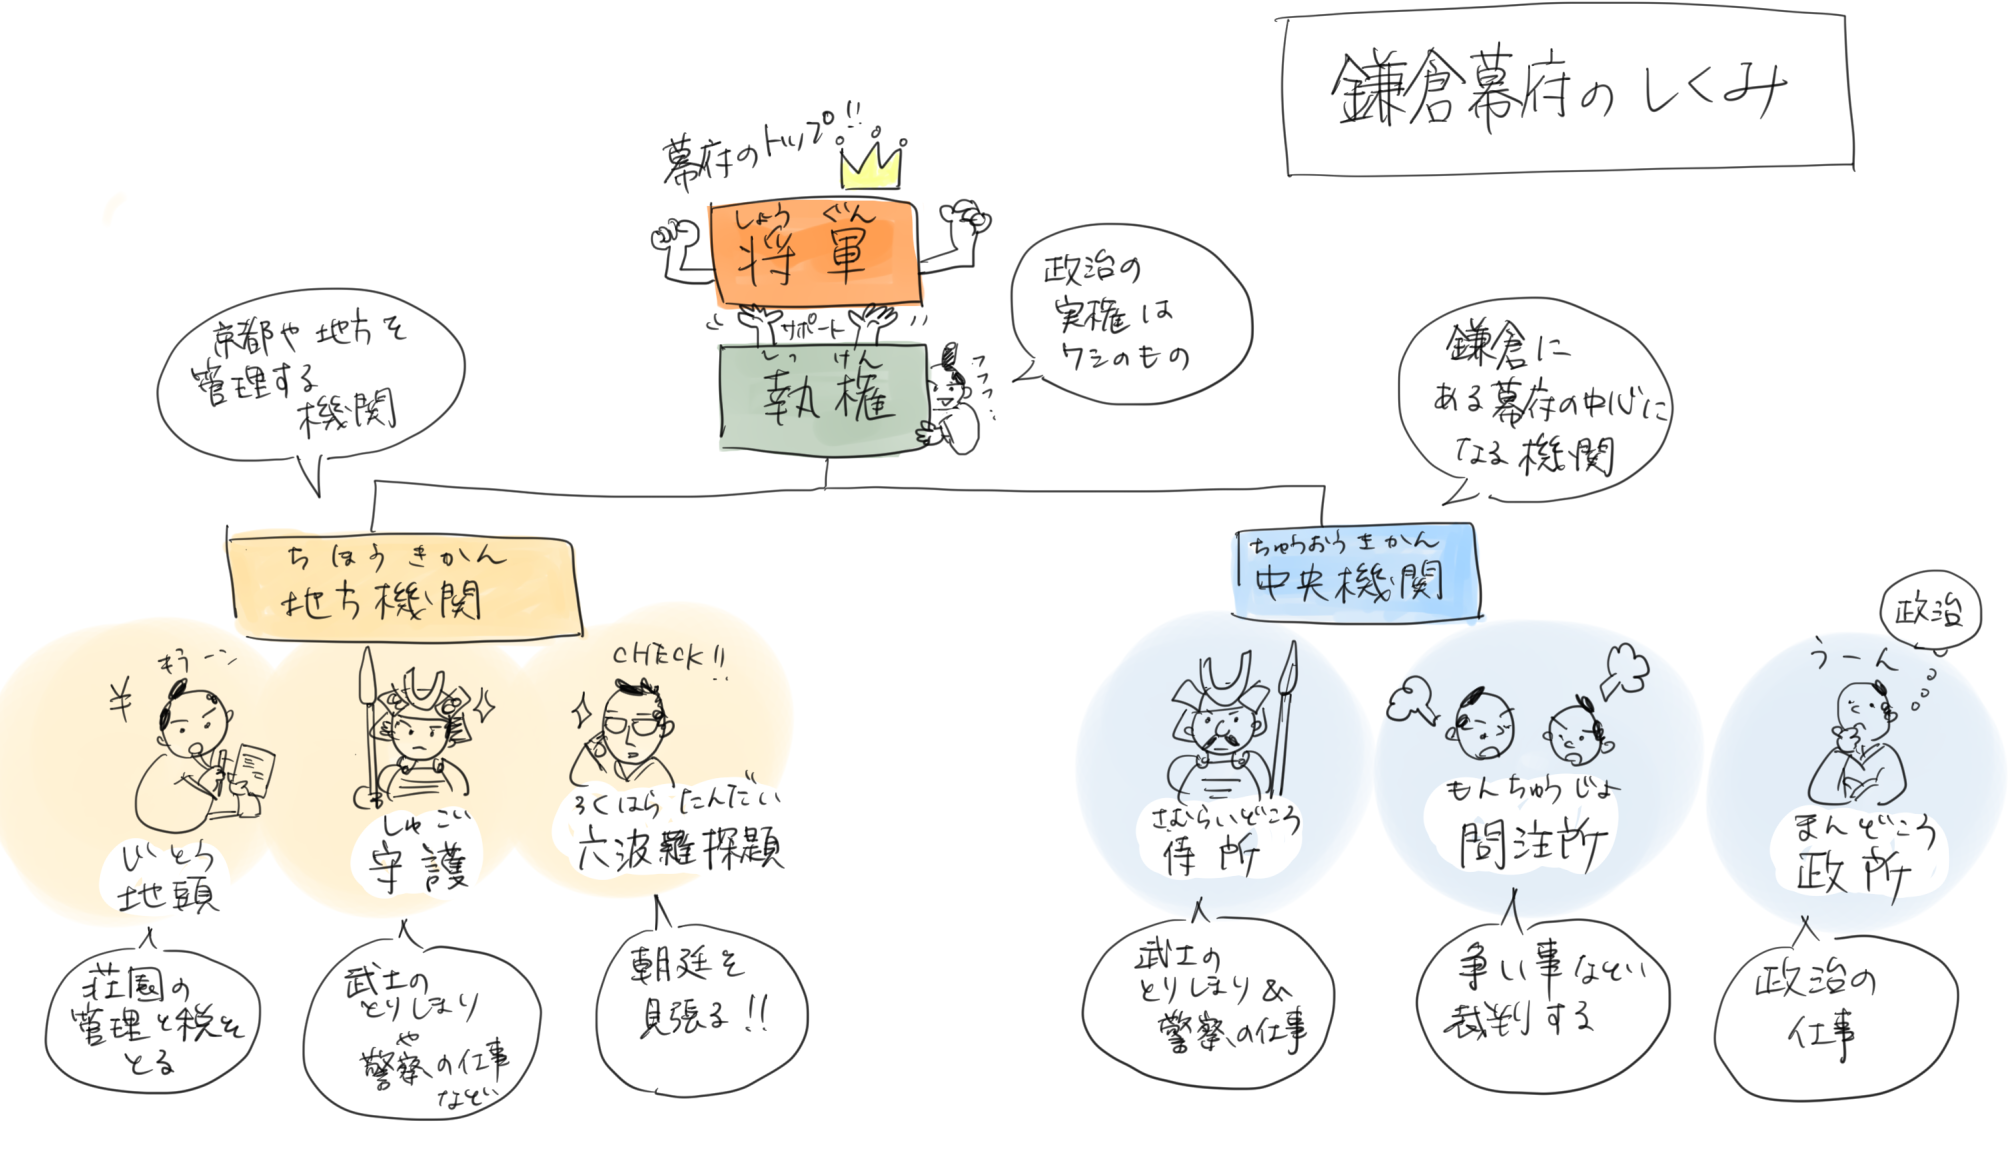 鎌倉幕府の政治のしくみのイラスト